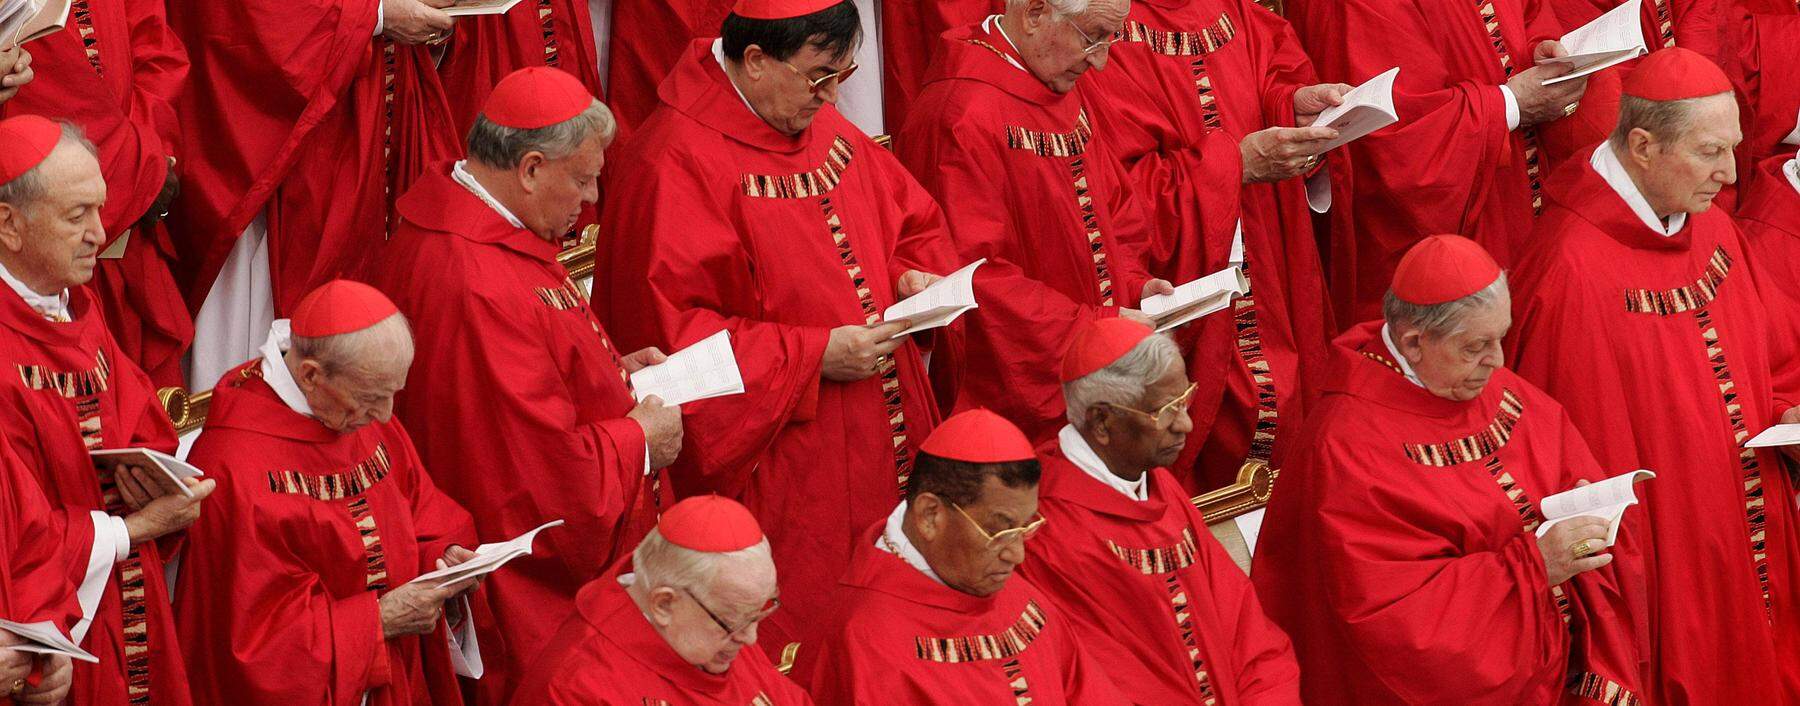 Altersgrenze. Kardinäle über 80 sind nicht bei der Papstwahl zugelassen.